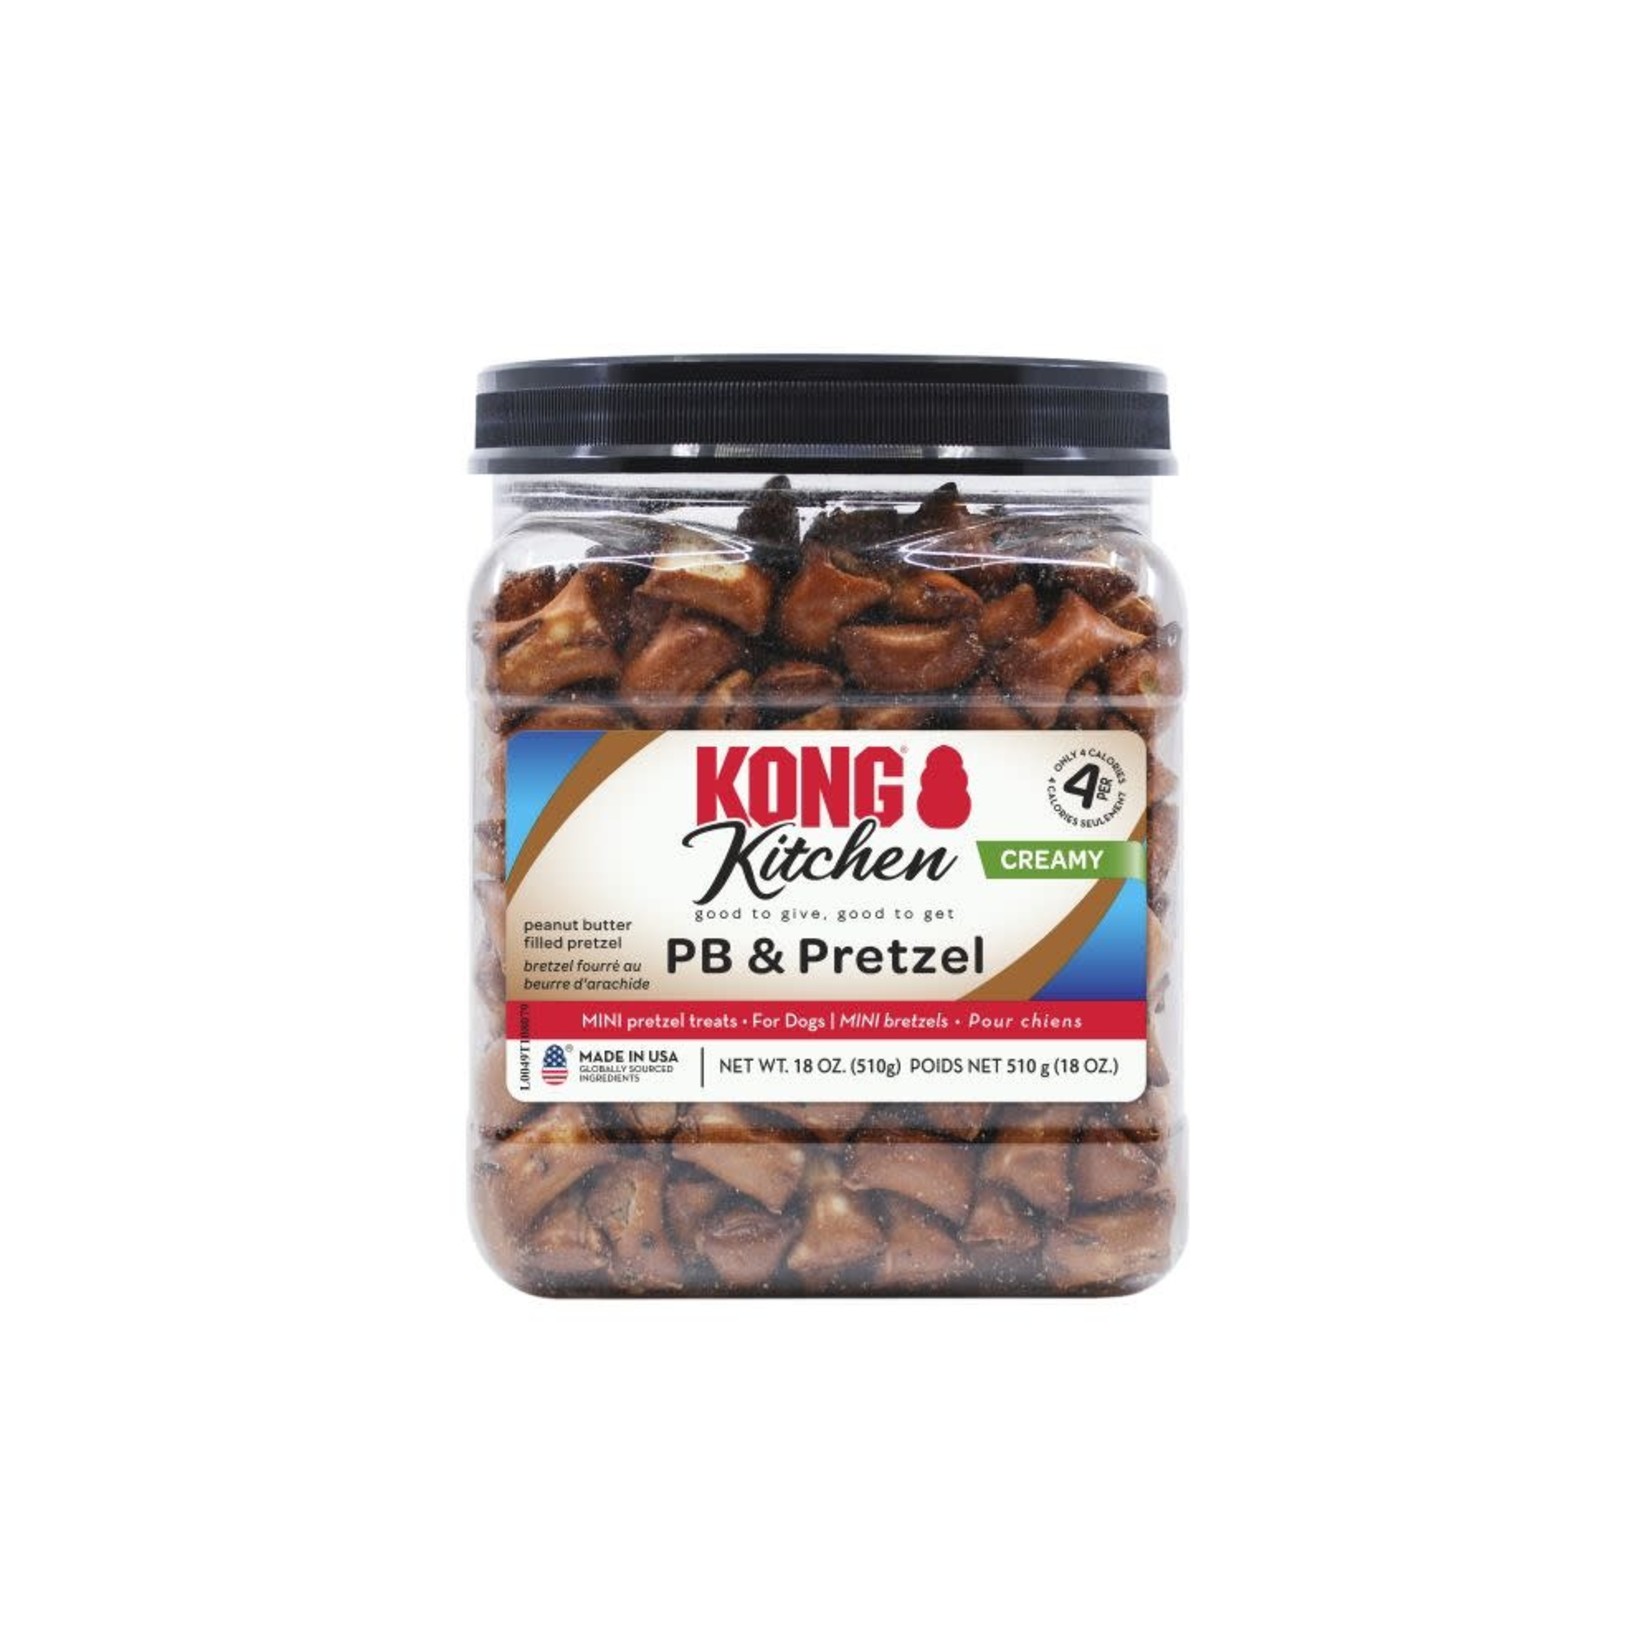 Kong Creamy - Peanut Butter & Pretzel